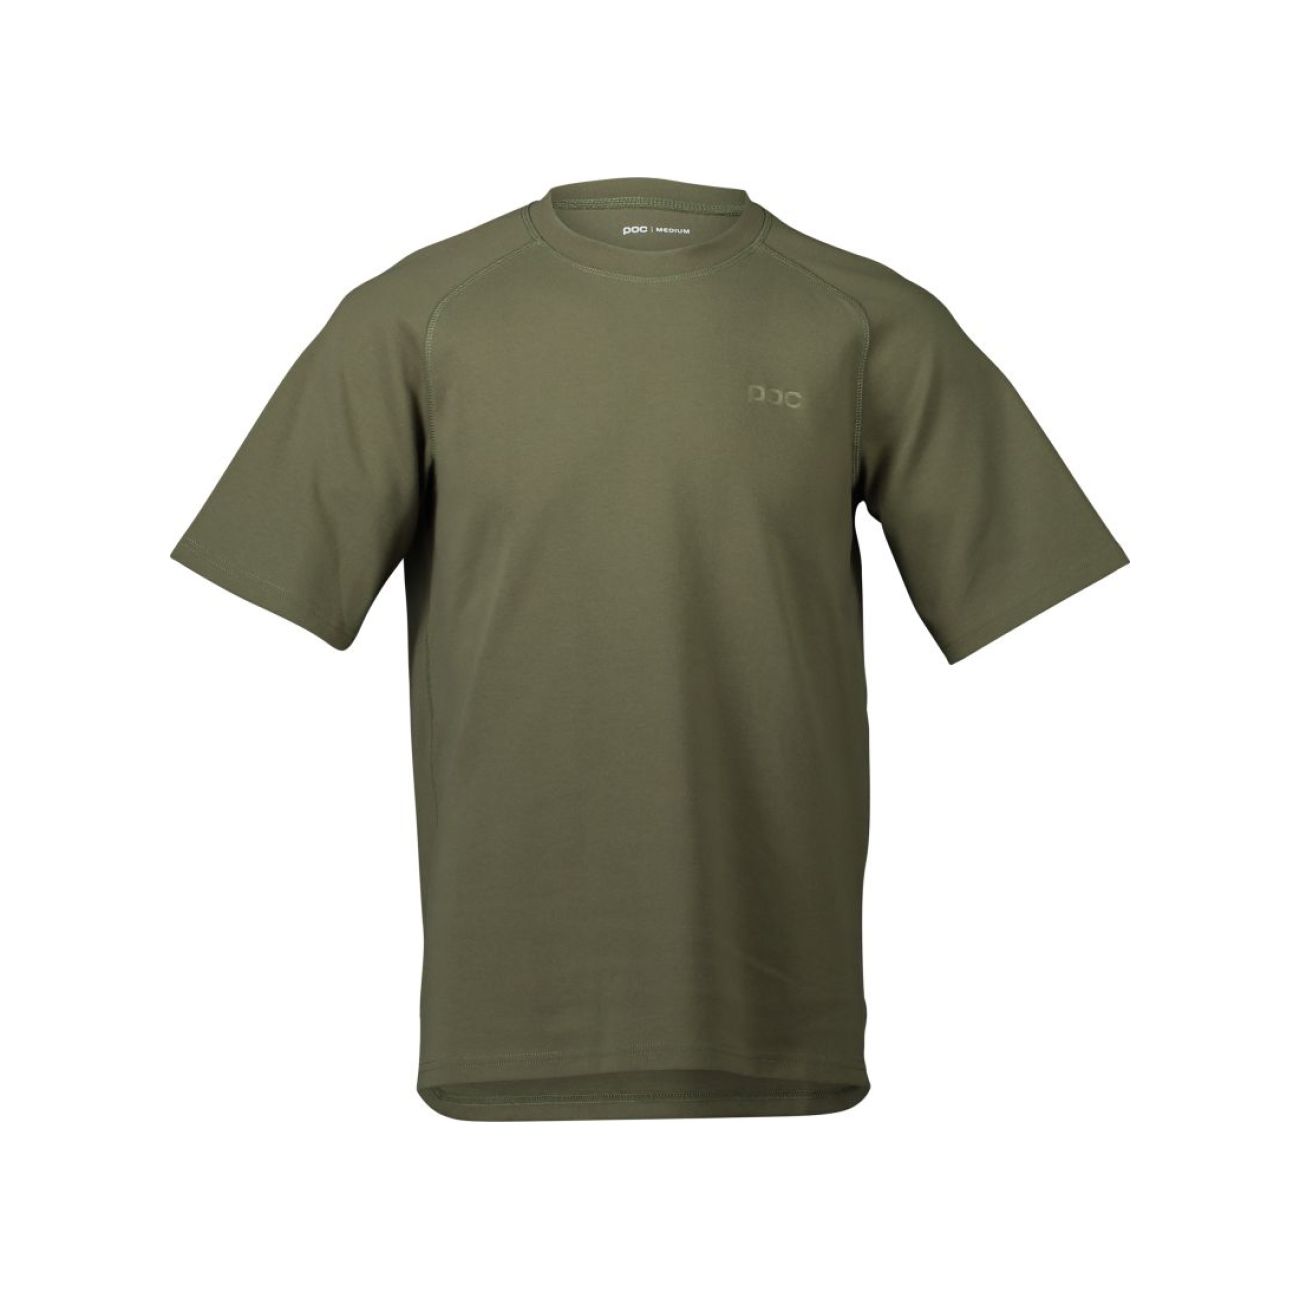 POC Kolarska Koszulka Z Krótkim Rękawem - POISE - Zielony